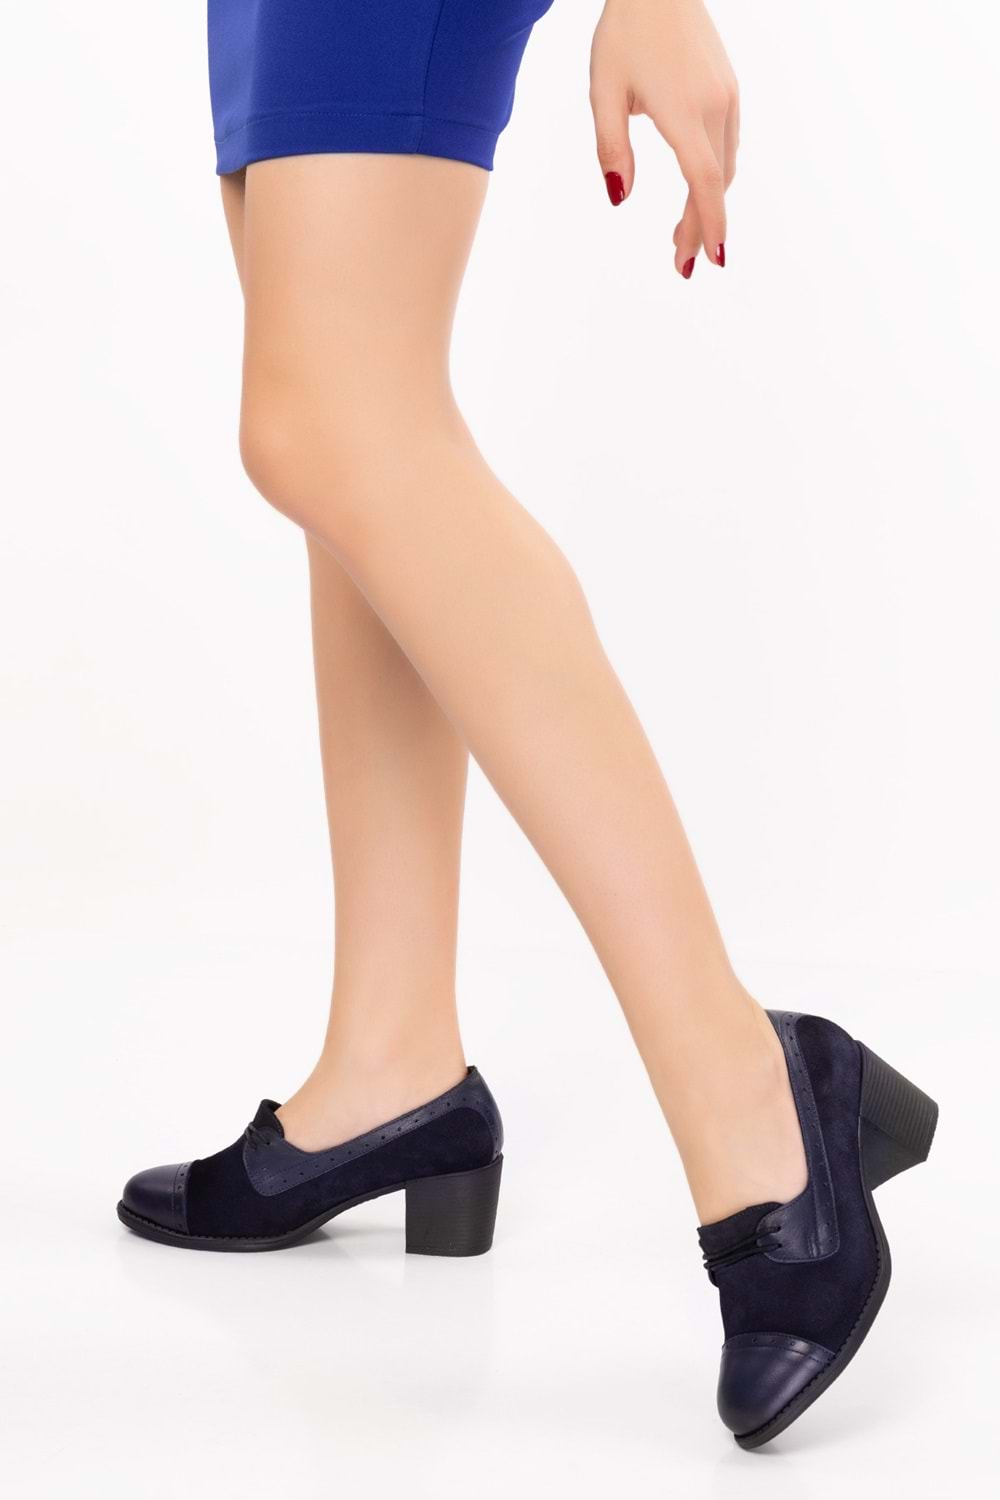 Gondol Kadın Hakiki Deri Rahat Topuklu Ayakkabı anl.7078 - Lacivert - 40